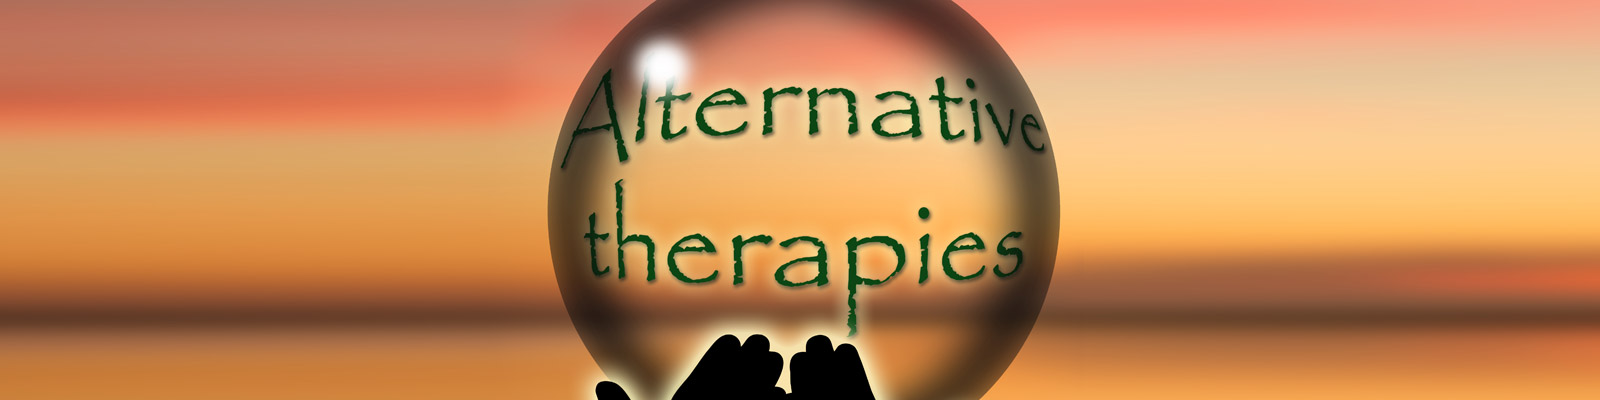 Schlafstörung Alternative Therapien